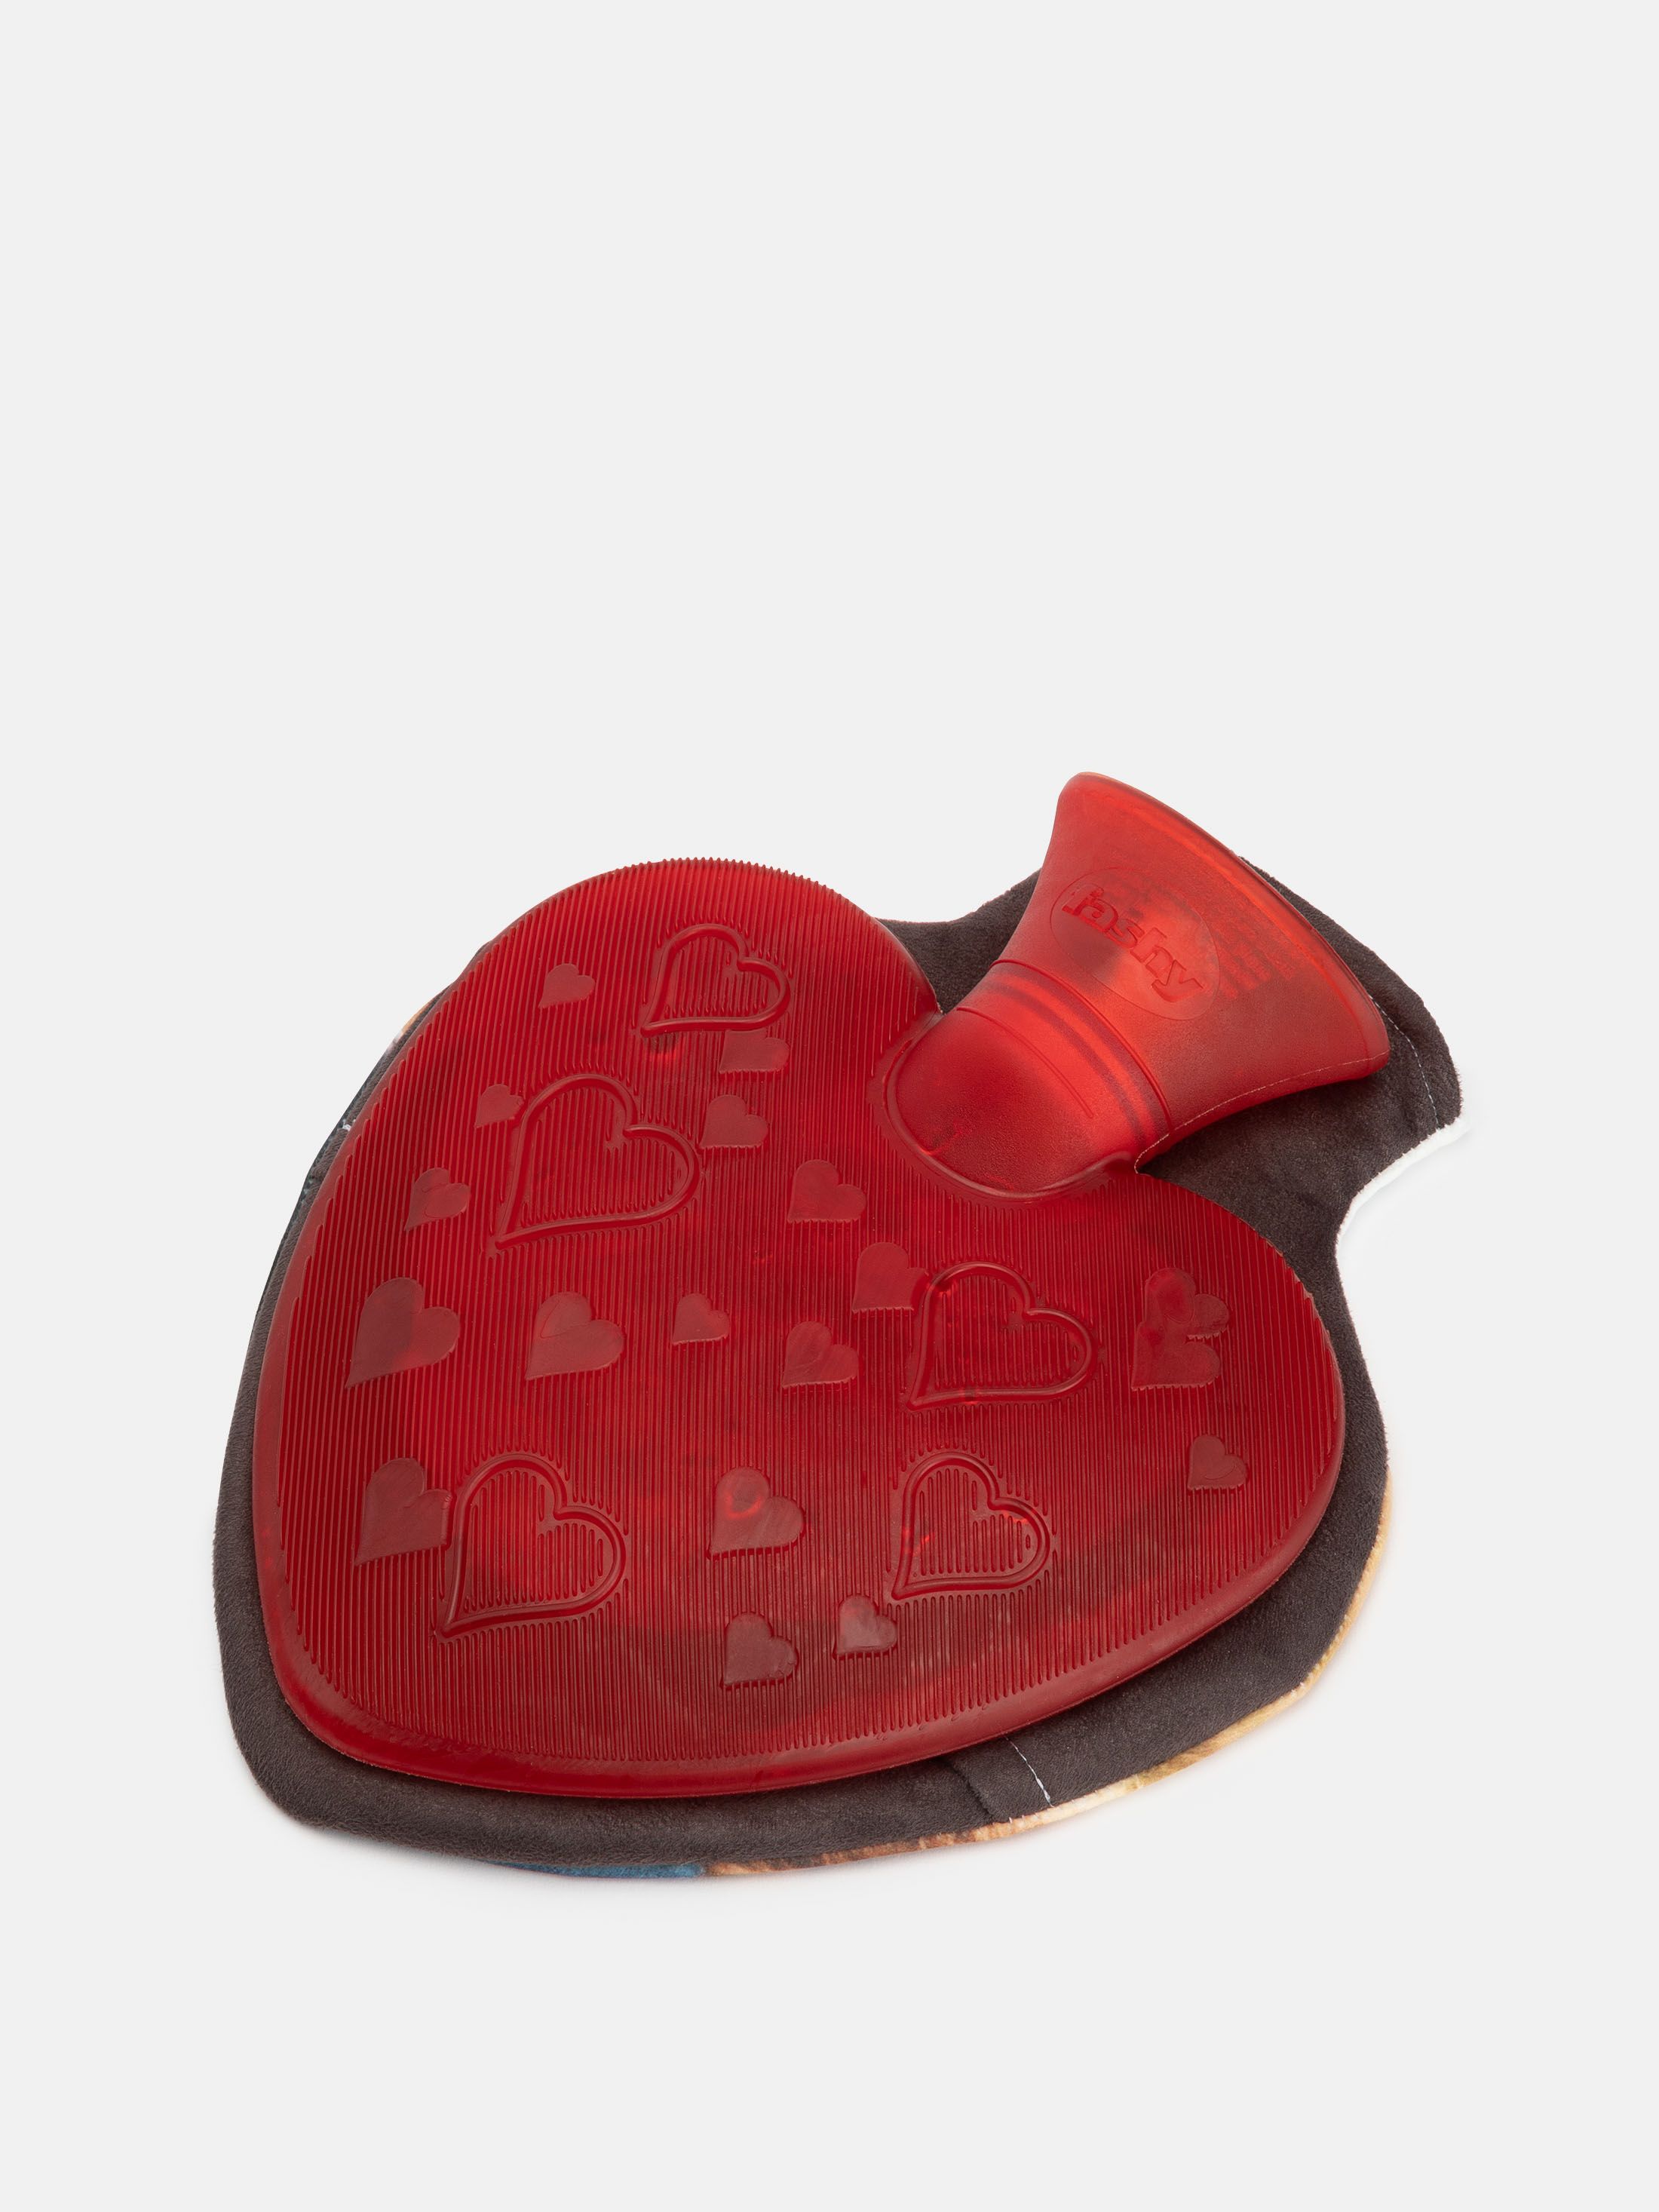 hot water bottle heart shaped